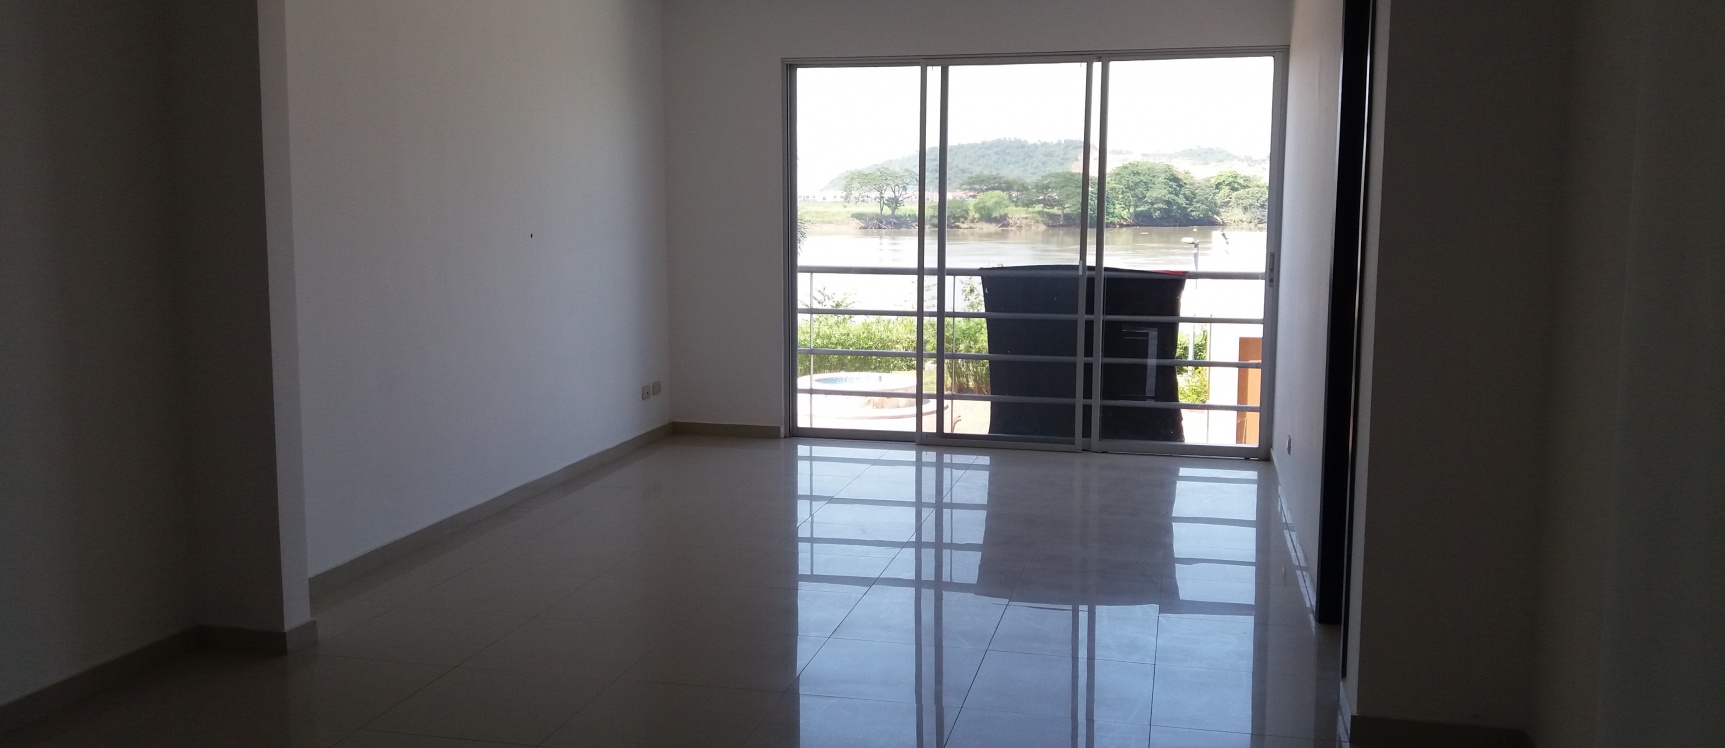 GeoBienes - Departamento en venta oportunidad en Urb. Altos del Río Samborondón - Plusvalia Guayaquil Casas de venta y alquiler Inmobiliaria Ecuador